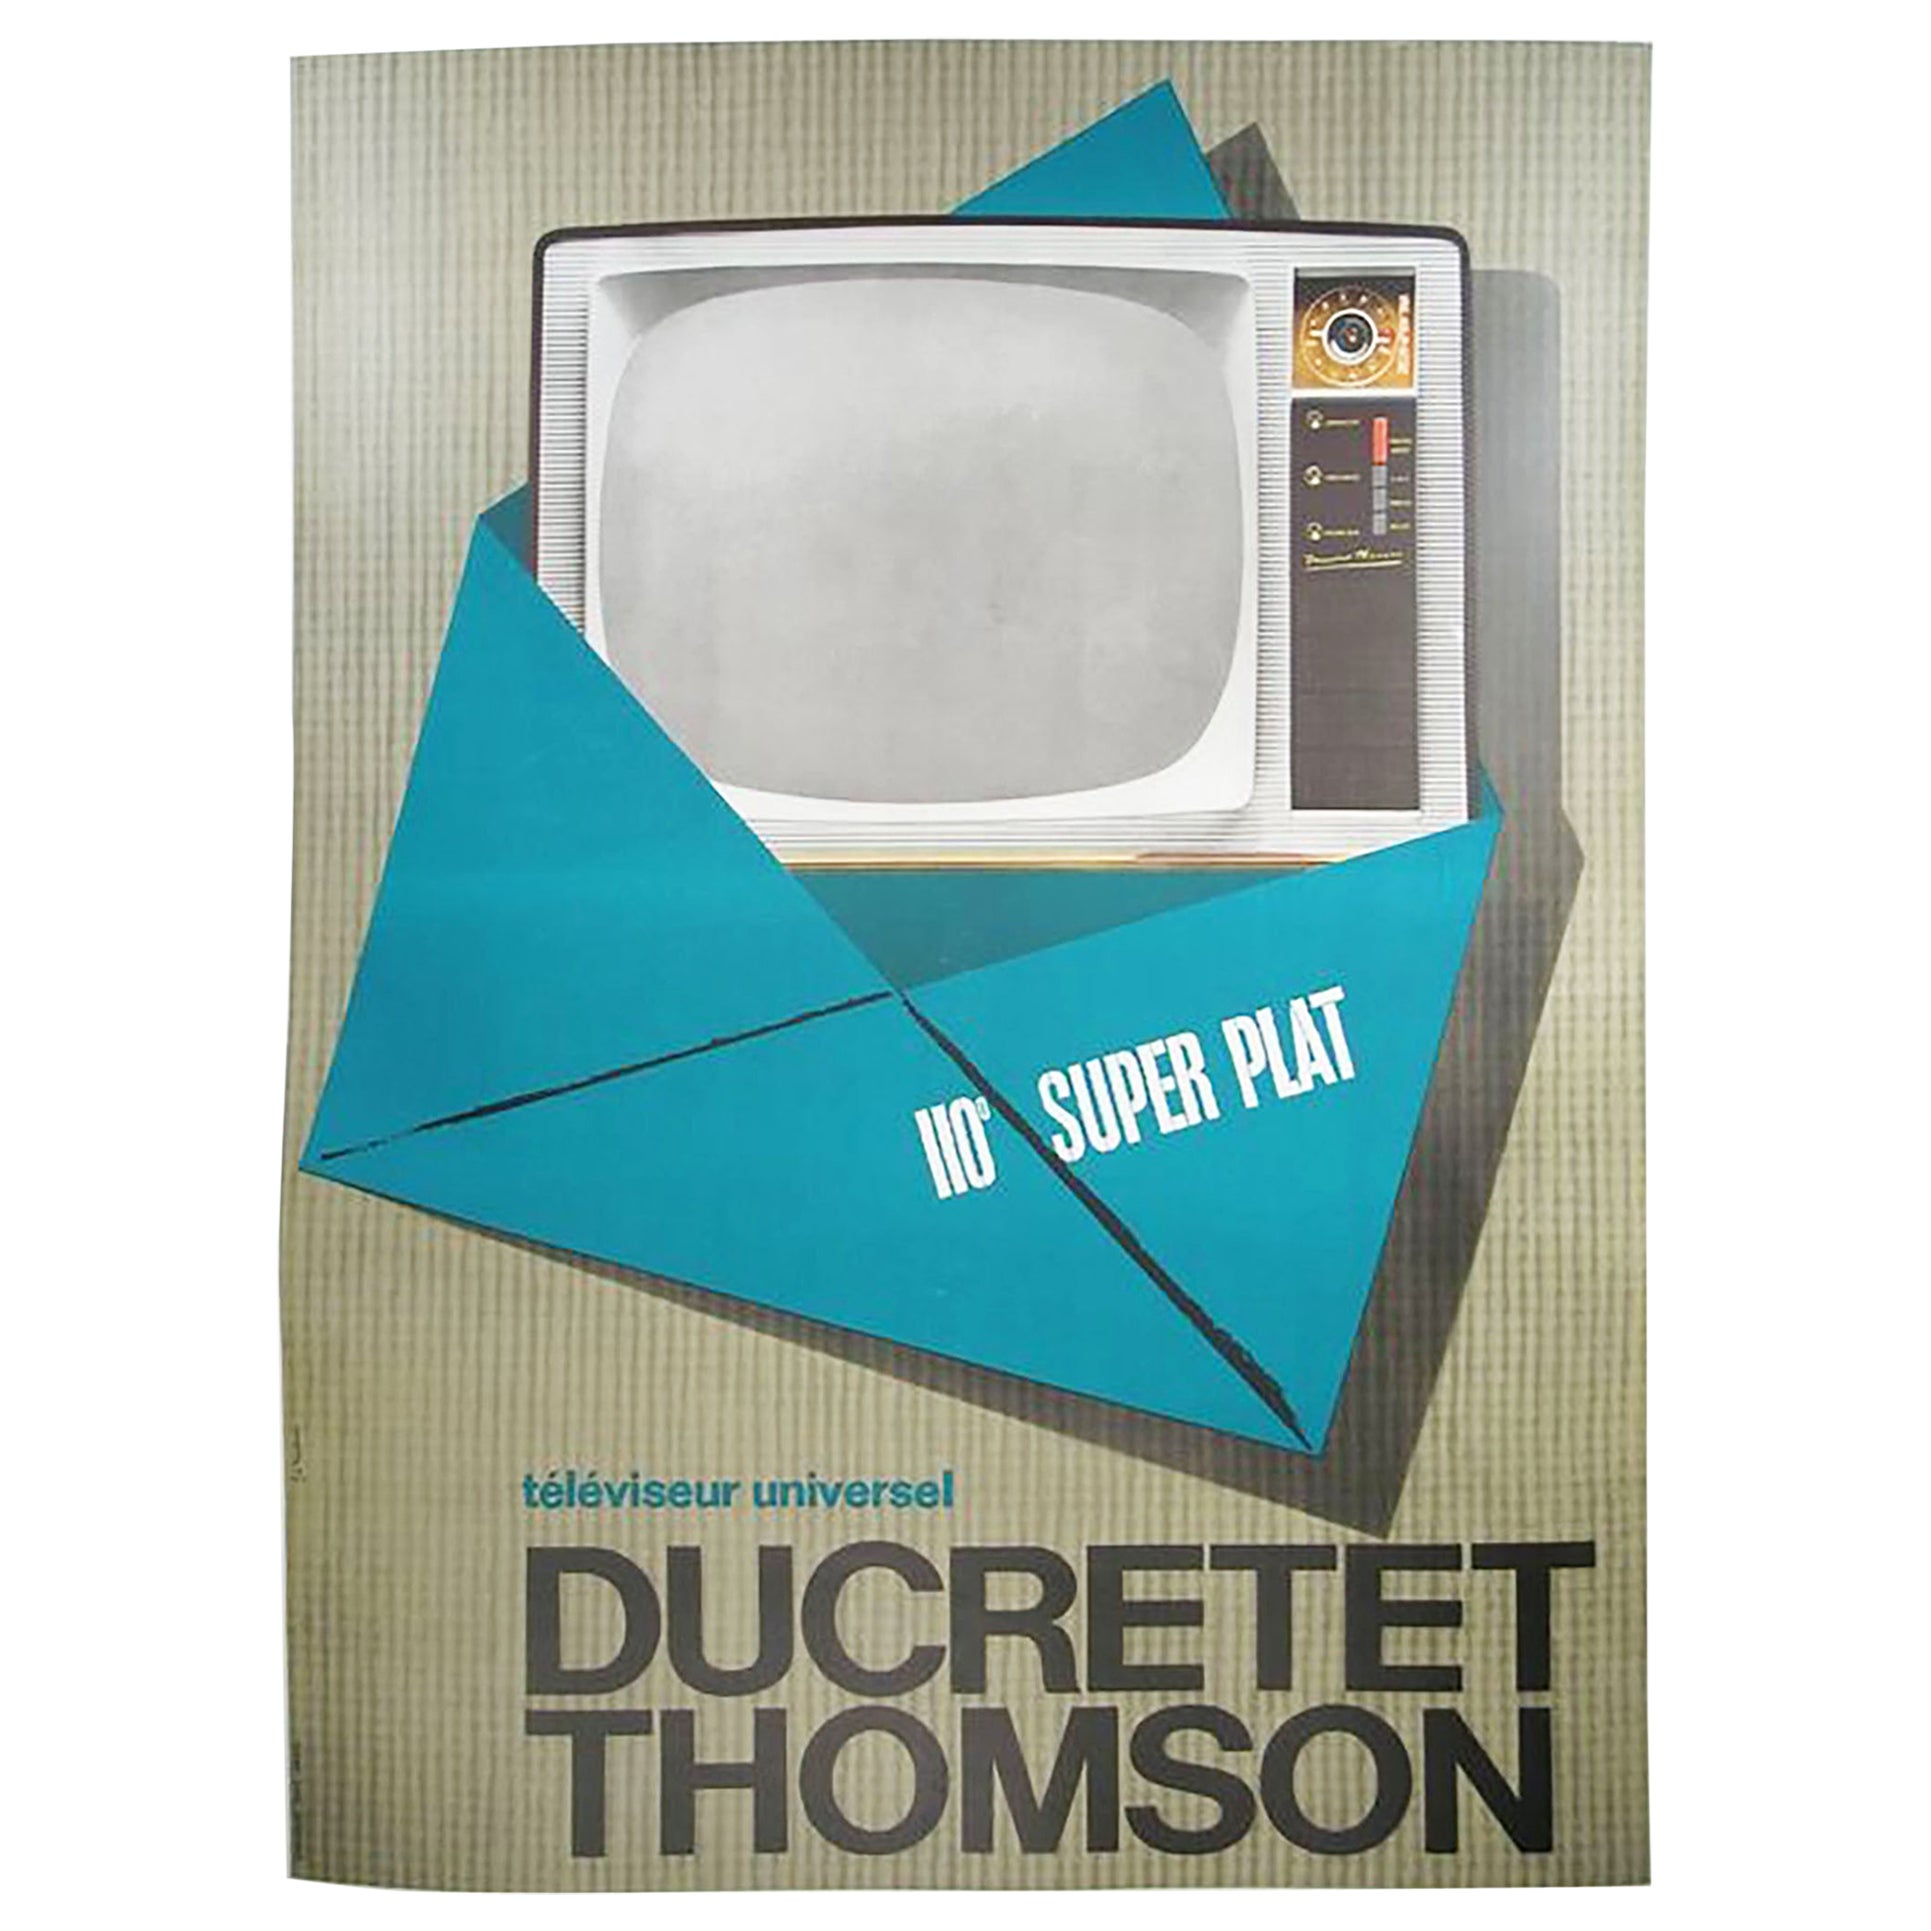 Ducretet Thomson Advertising Poster, 1960